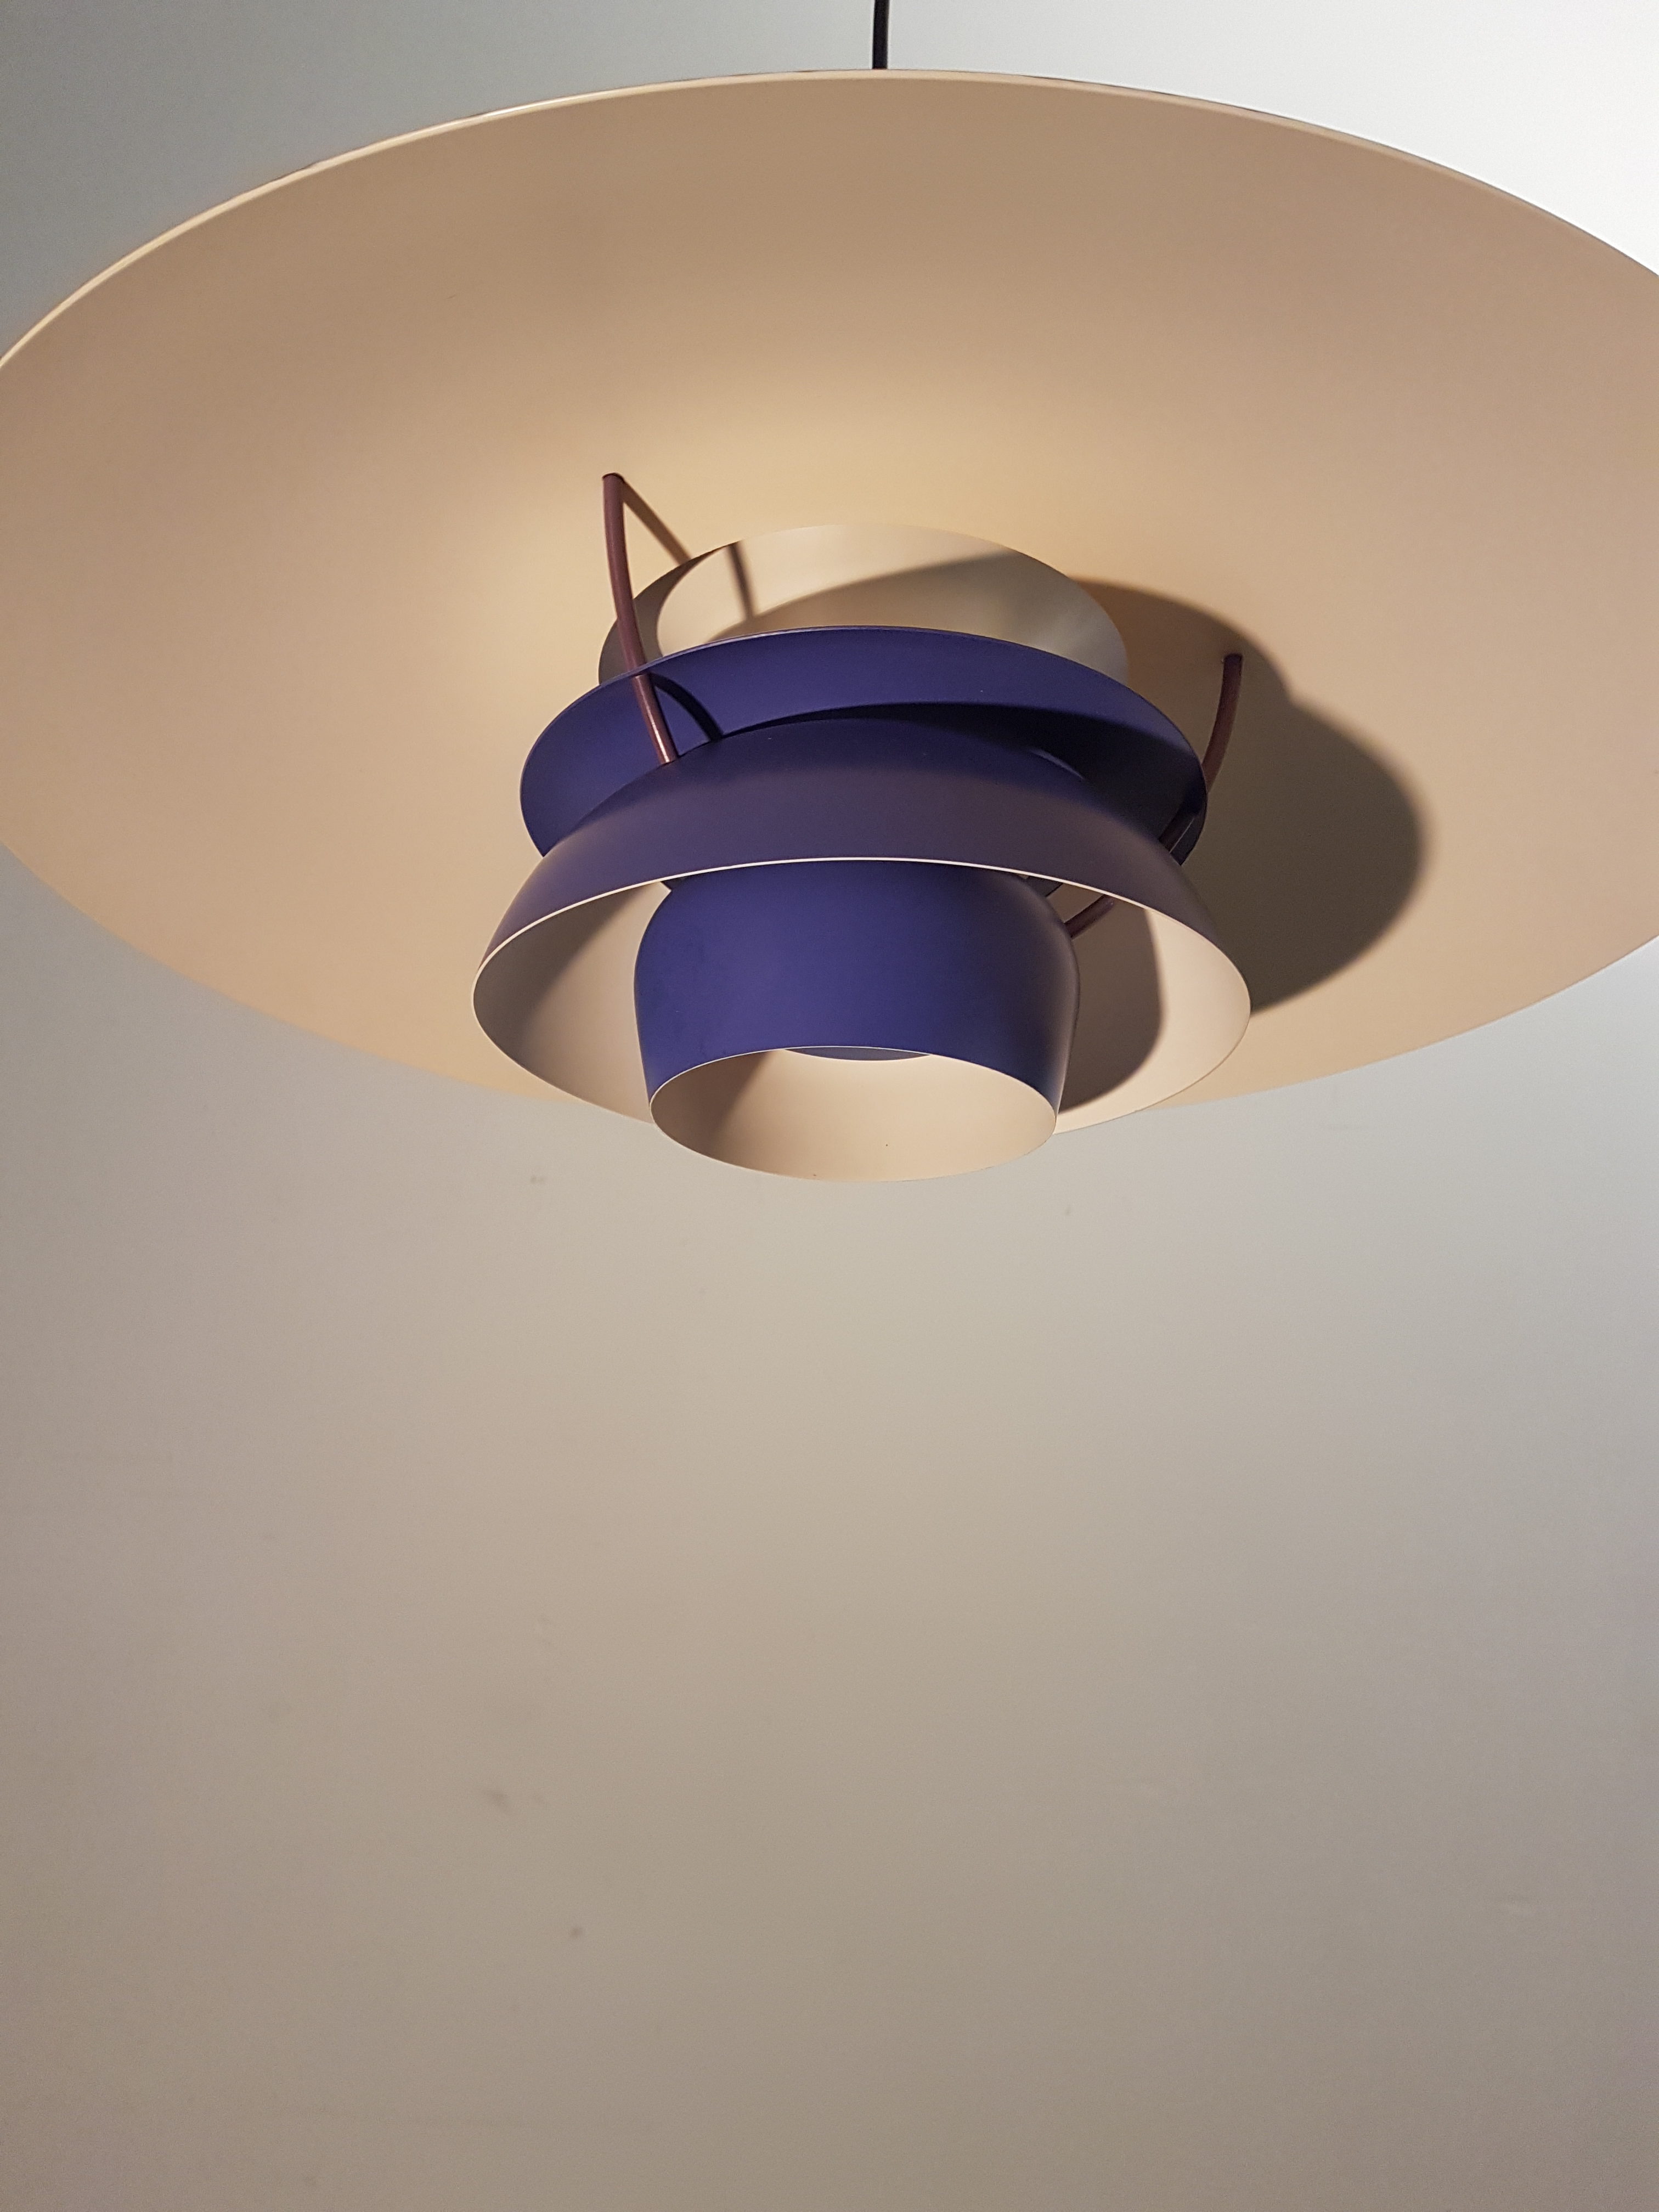 Vintage PH 5 pendant lamp by Poul Henningsen for Louis Poulsen